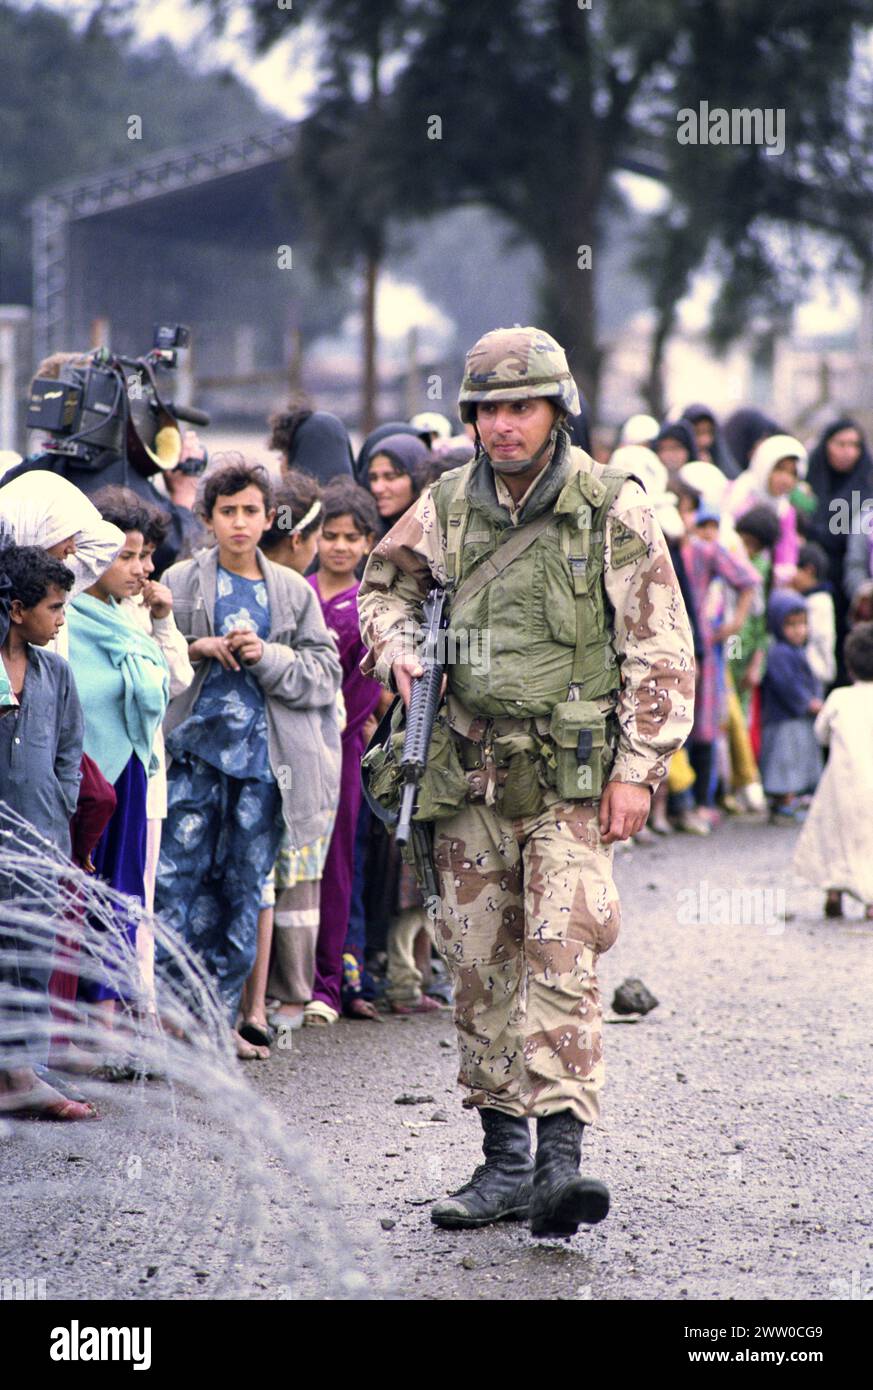 23 mars 1991 Un soldat de l'armée américaine de la 3ème division blindée 'fer de lance' garde une ligne ordonnée d'Irakiens déplacés, faisant la queue pour de la nourriture et des boissons près de Safwan dans le sud de l'Irak. Banque D'Images